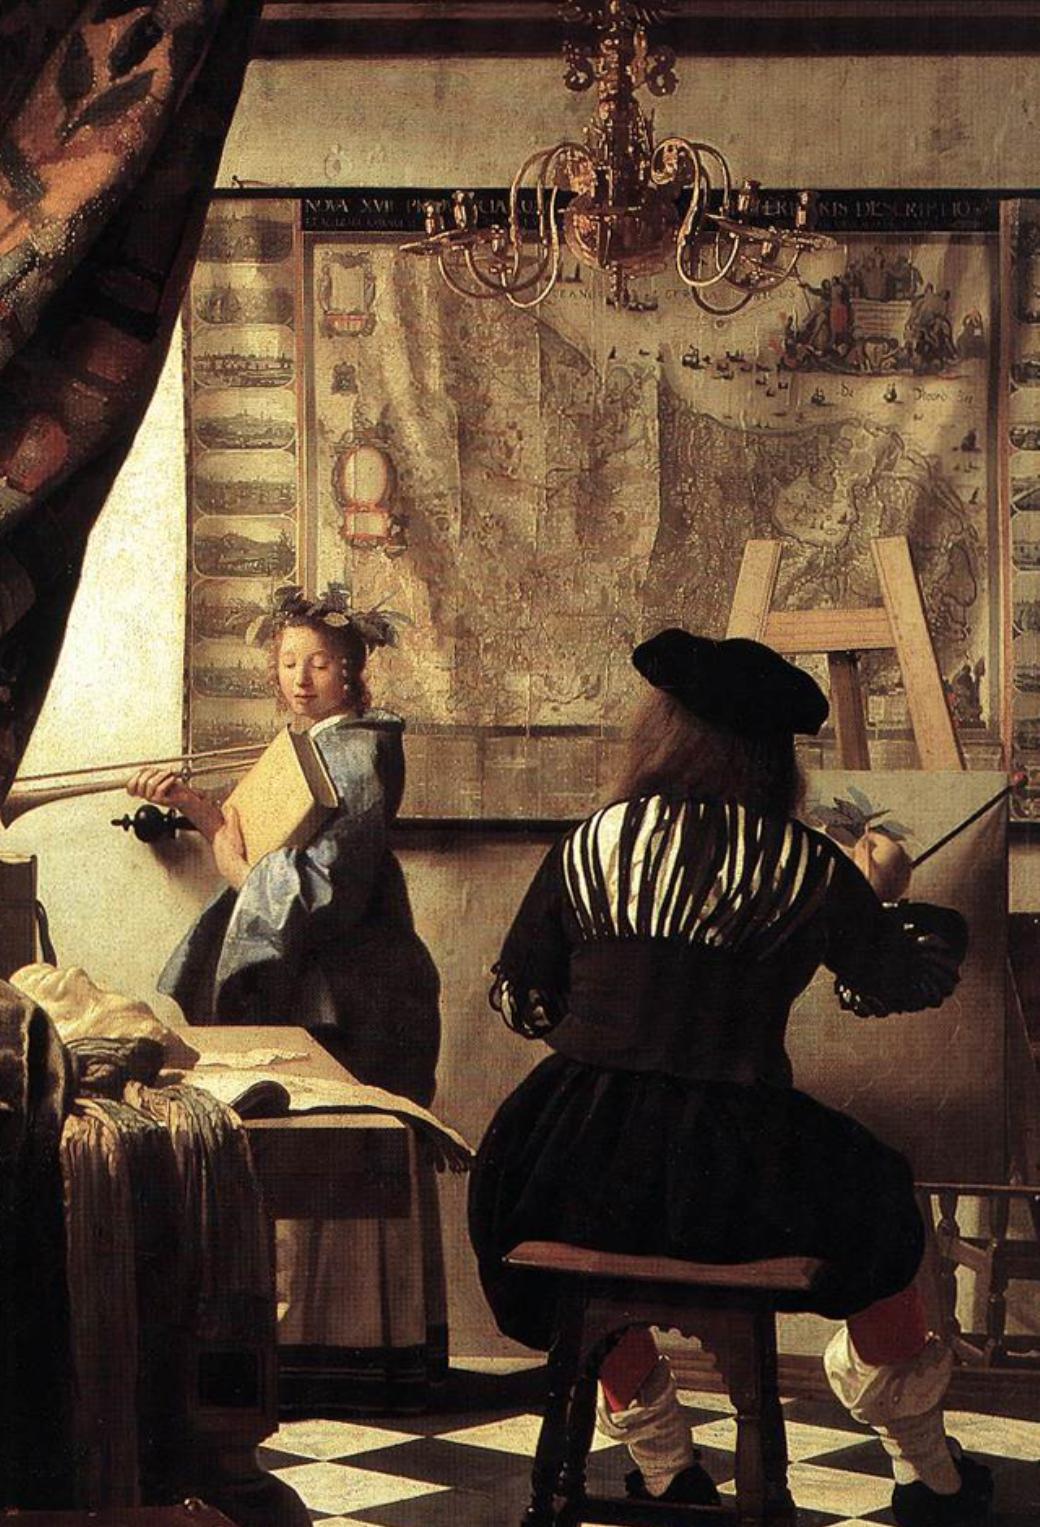 フェルメール 絵画芸術 絵画の寓意 画家のアトリエ 1666年ごろ Iphone壁紙 Iphone視覚効果対応